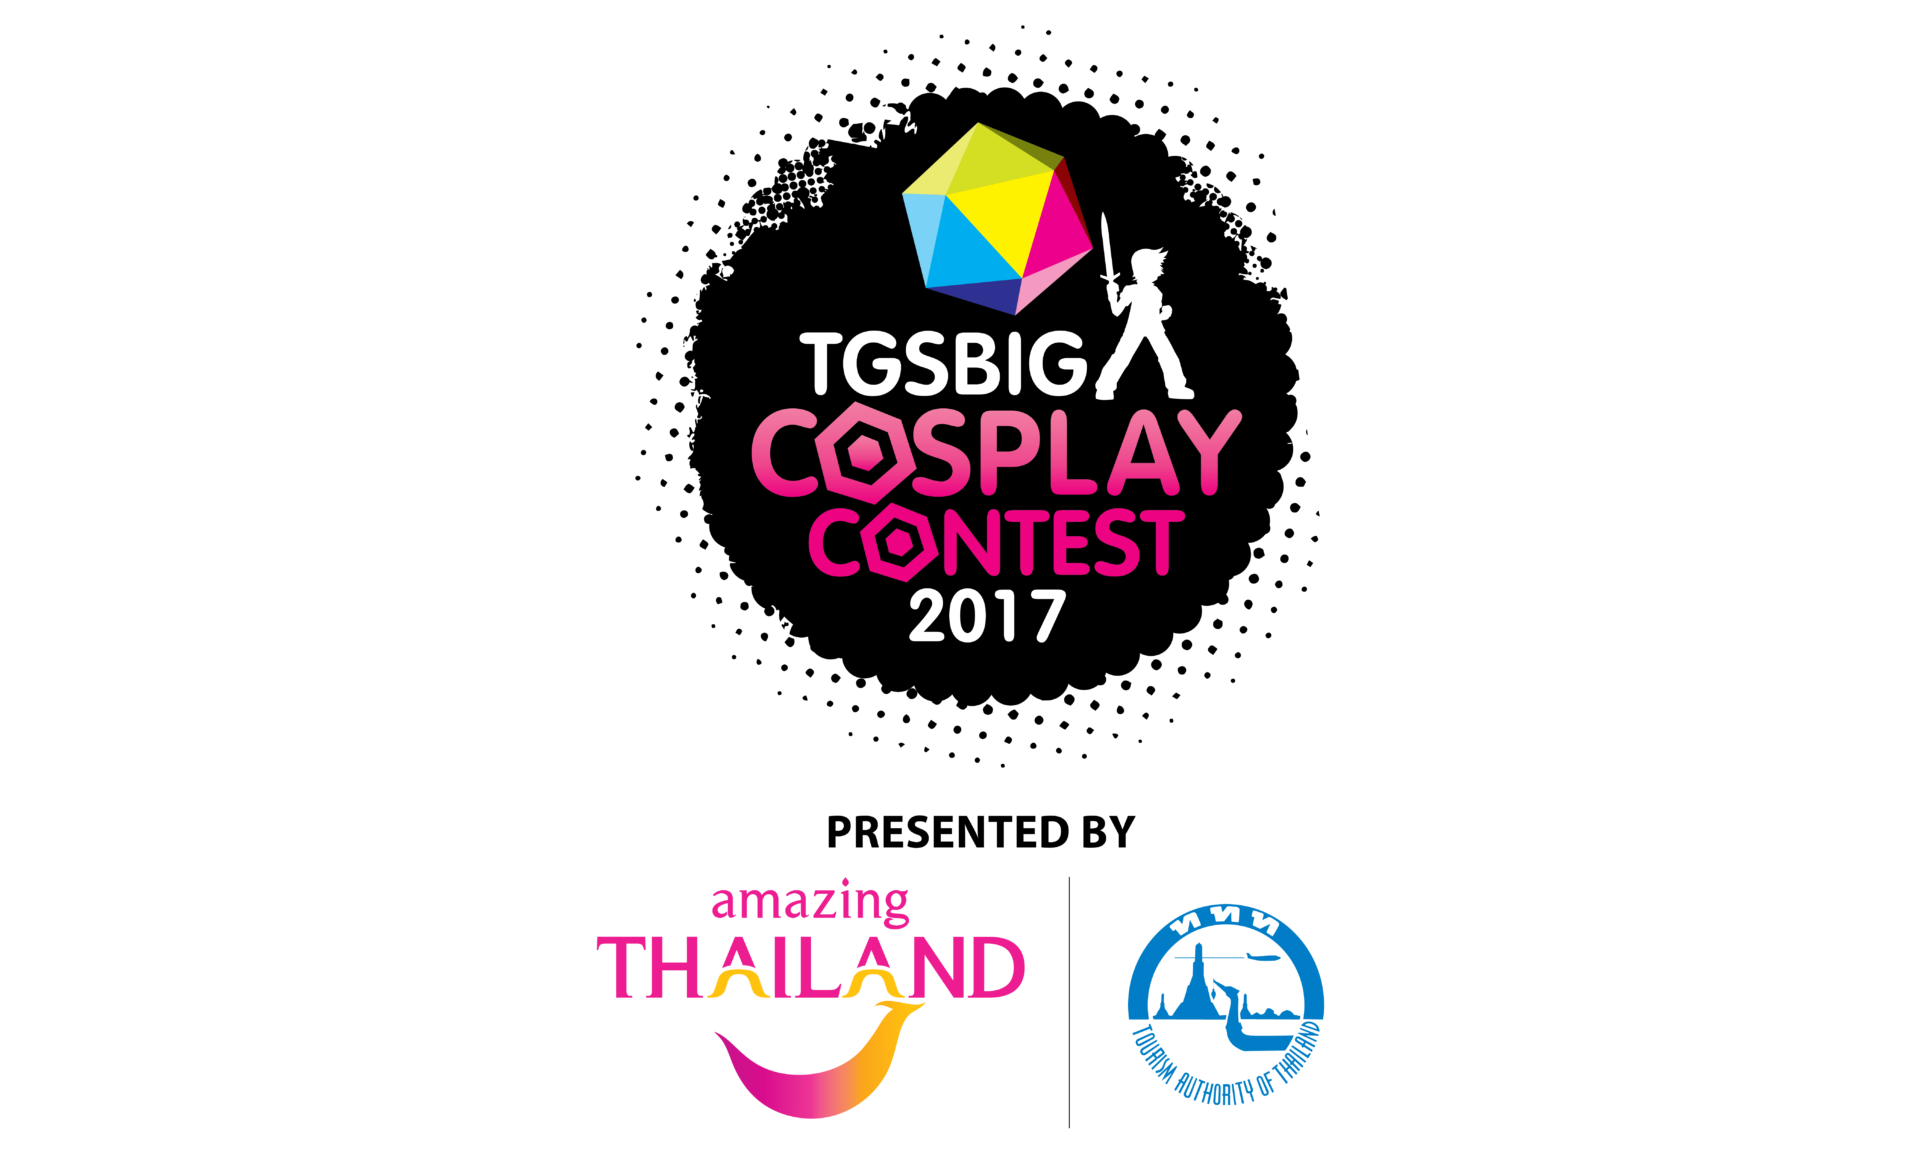 ครั้งแรก!! กับการประกวดคอสเพลย์รางวัลพิเศษสาขา “Amazing Thailand” ในงาน TGSBIG 2017